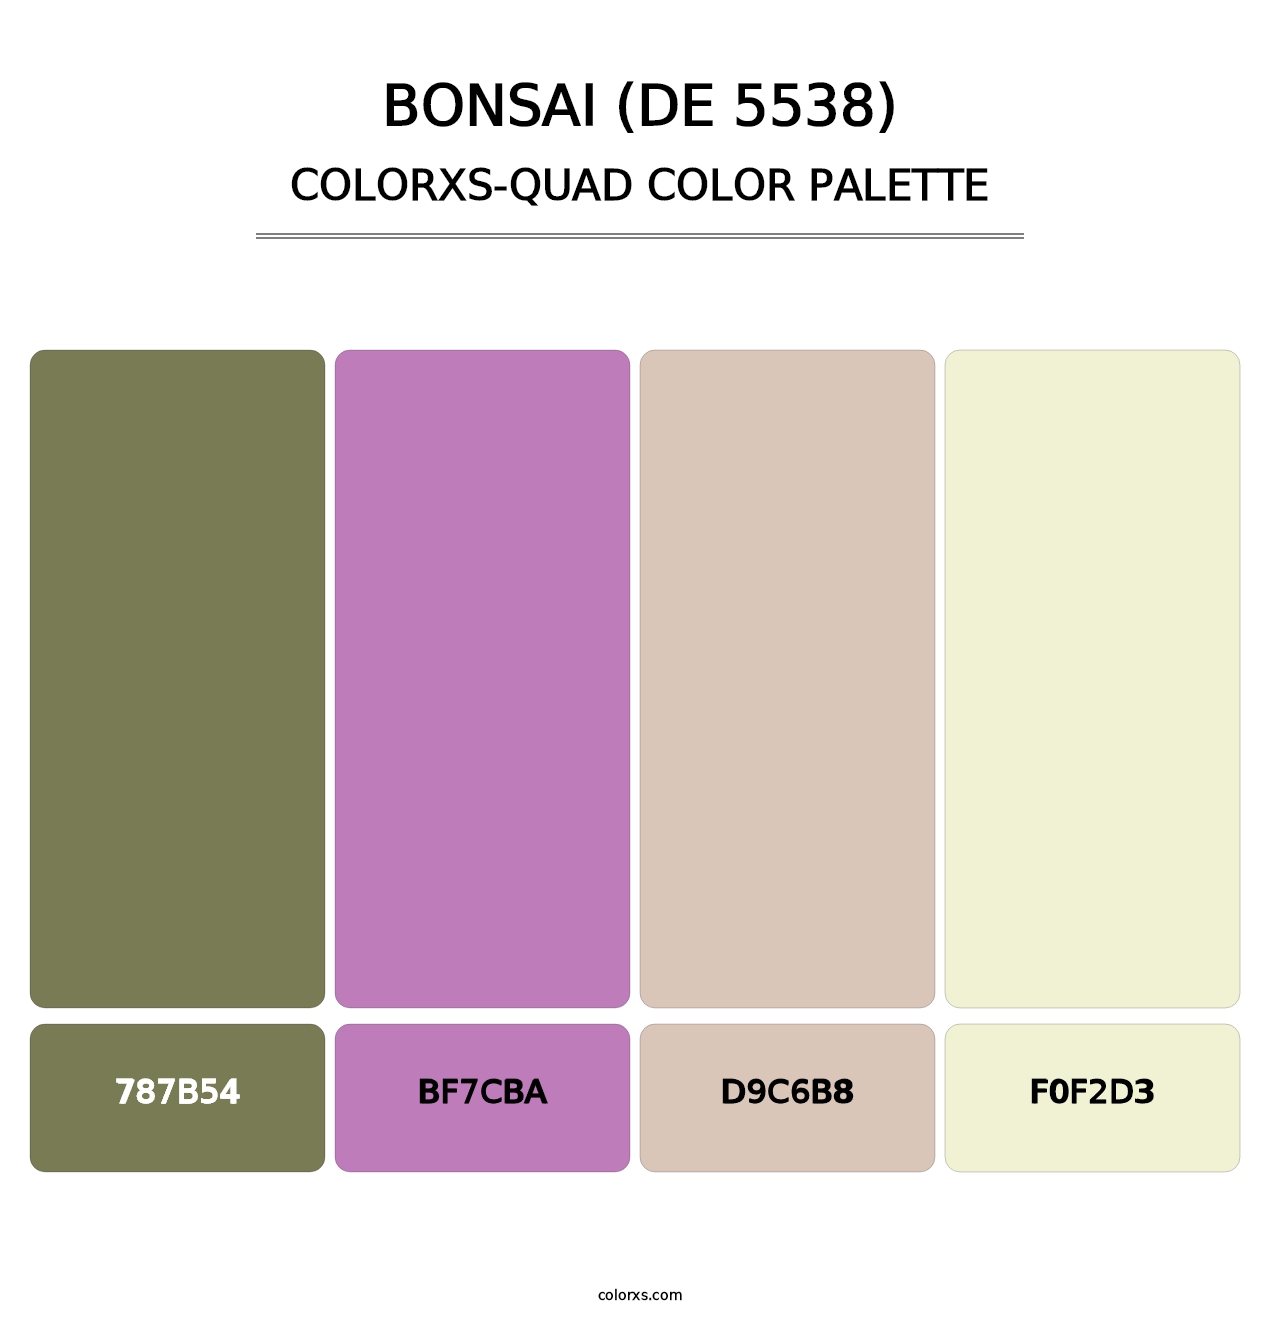 Bonsai (DE 5538) - Colorxs Quad Palette